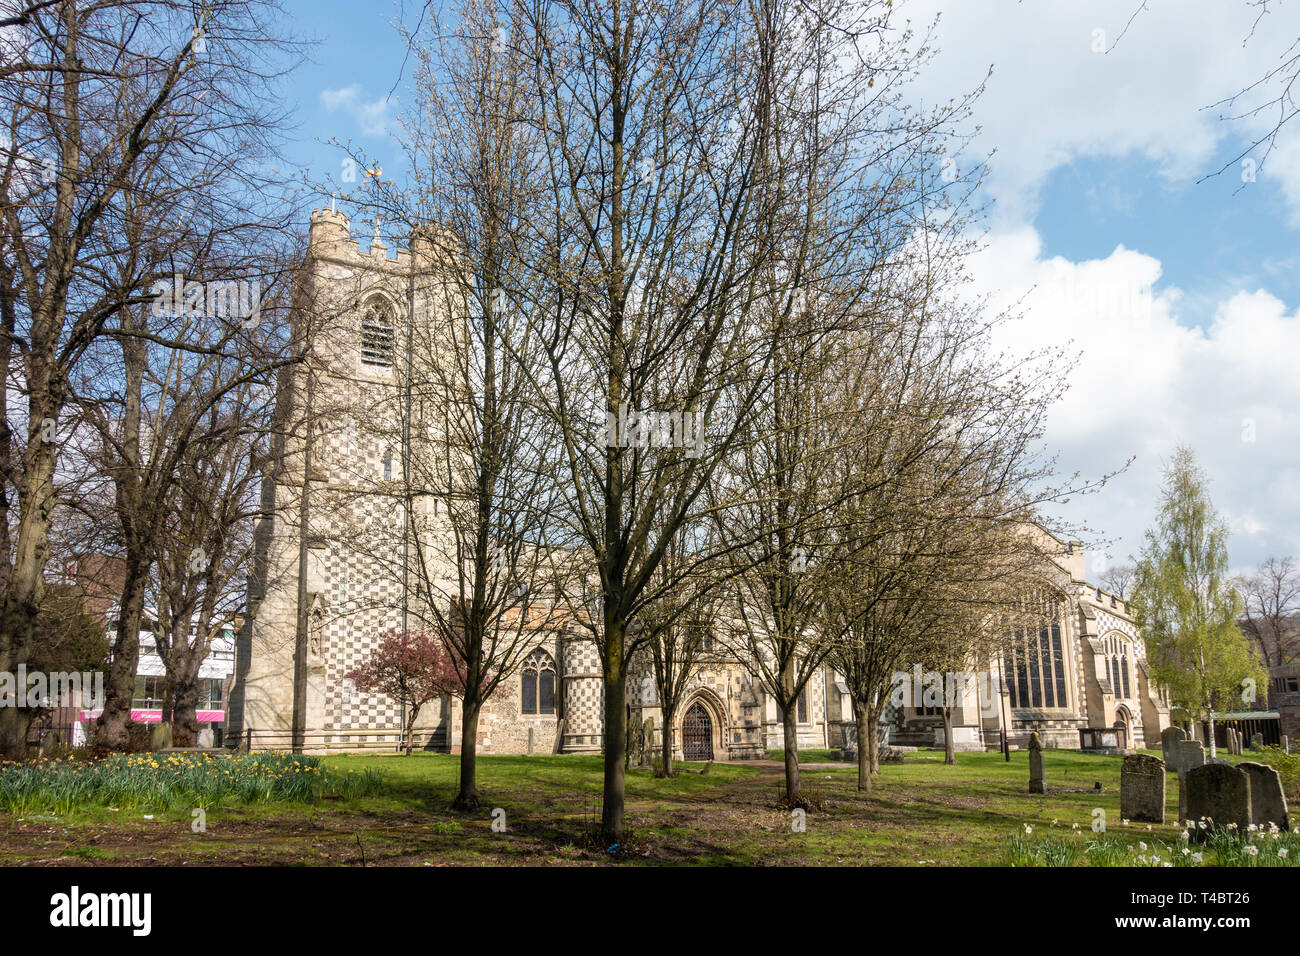 Chiesa di Santa Maria in Luton, Regno Unito appartiene alla diocesi di St Albans. Foto Stock